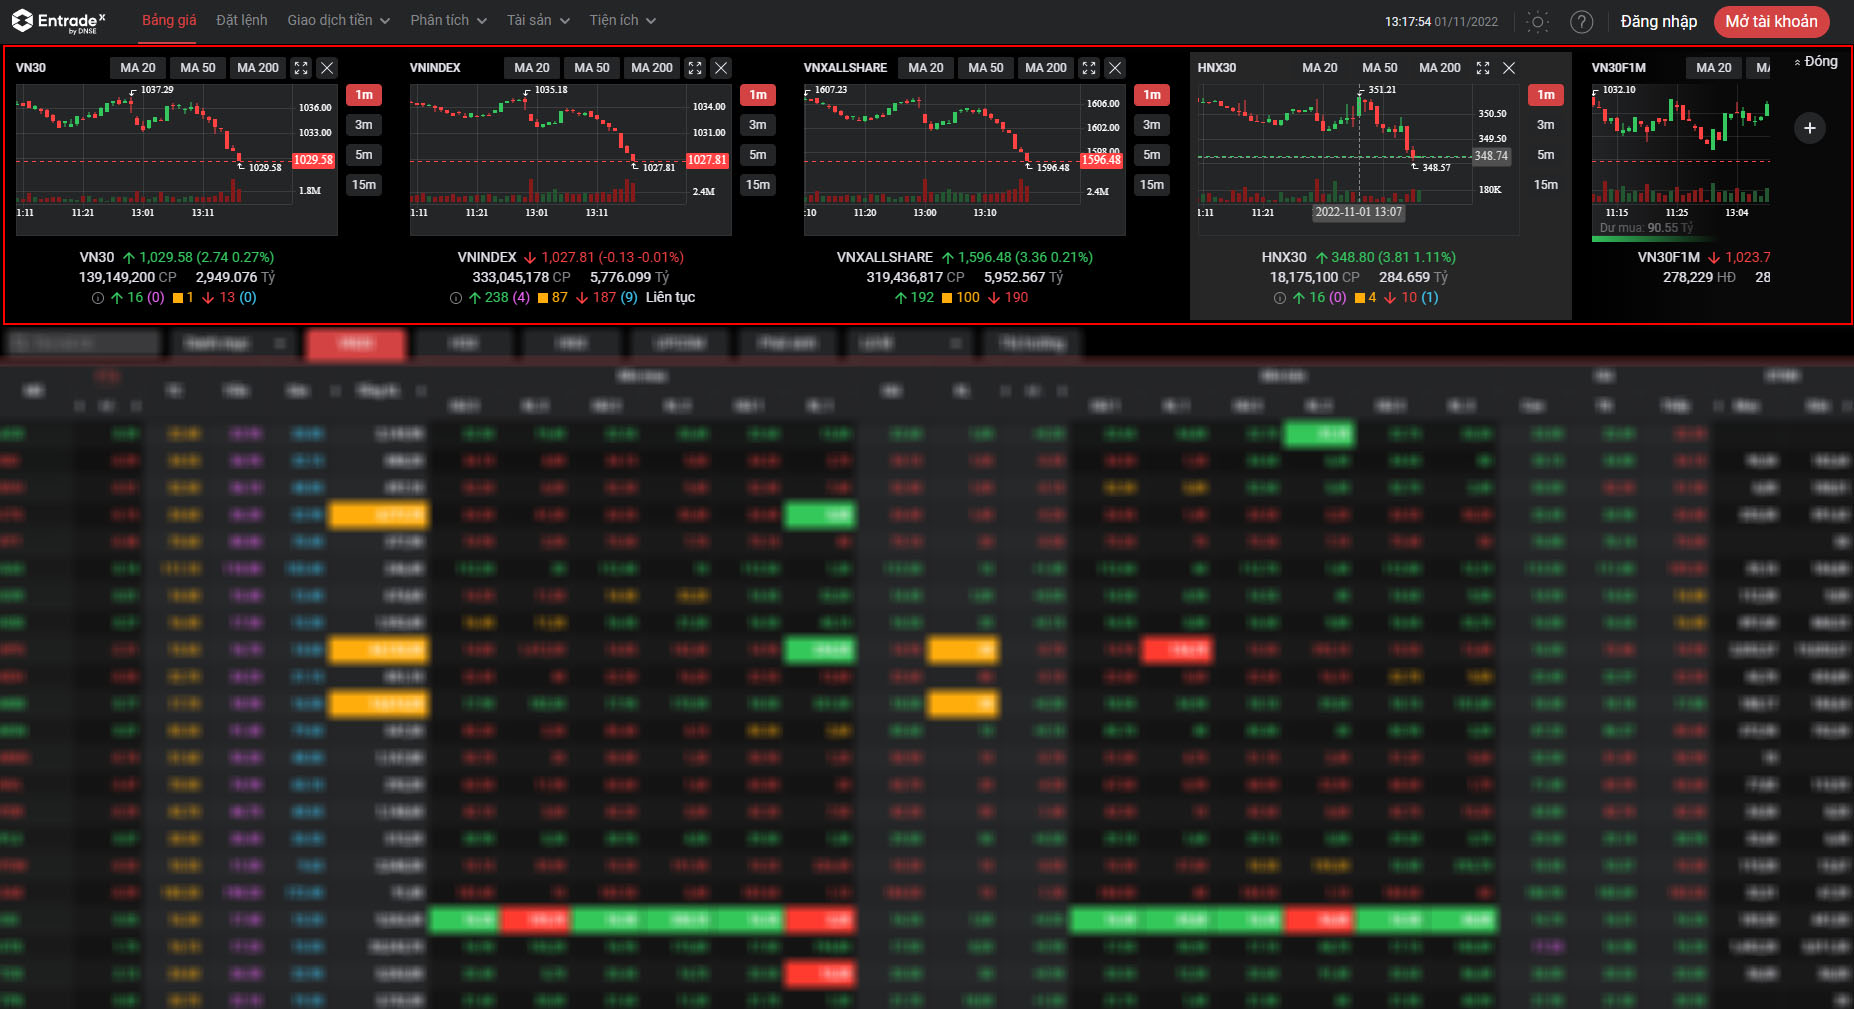 Các biểu đồ vật và chỉ số thị trường chứng khoán được thể hiện nay rõ nét bên trên Bảng giá bán thị trường chứng khoán EntradeX